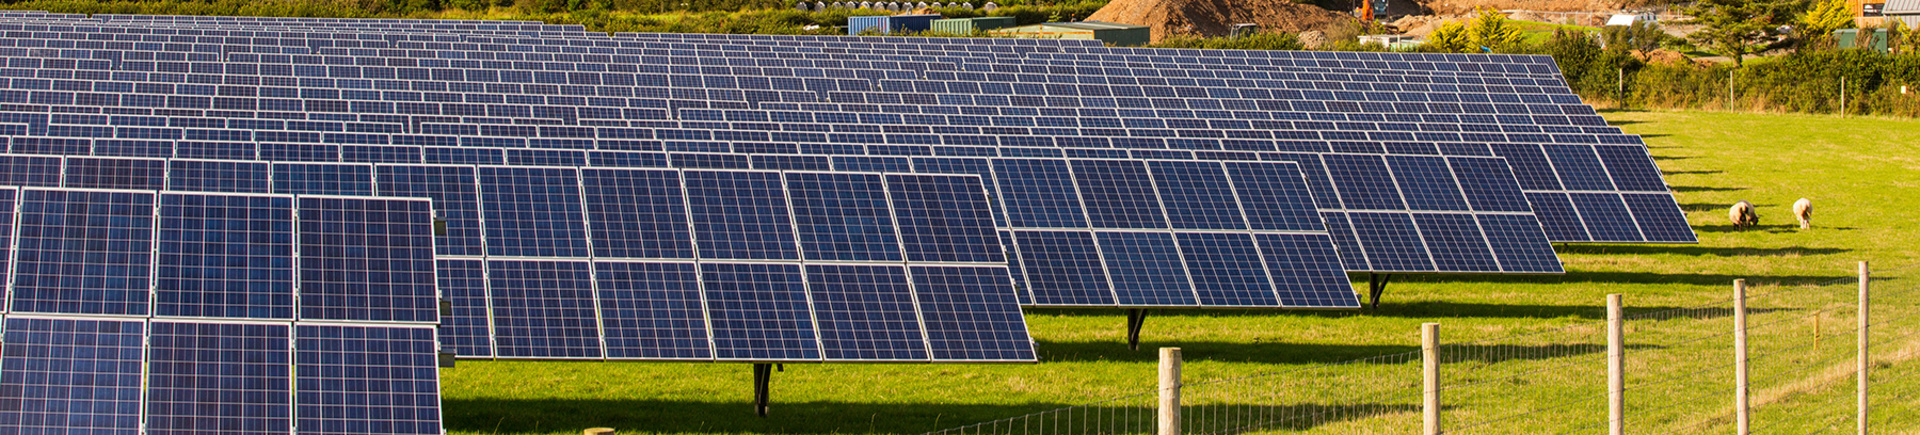 SG Solartechnik für Photovoltaik Freiflächenanlagen